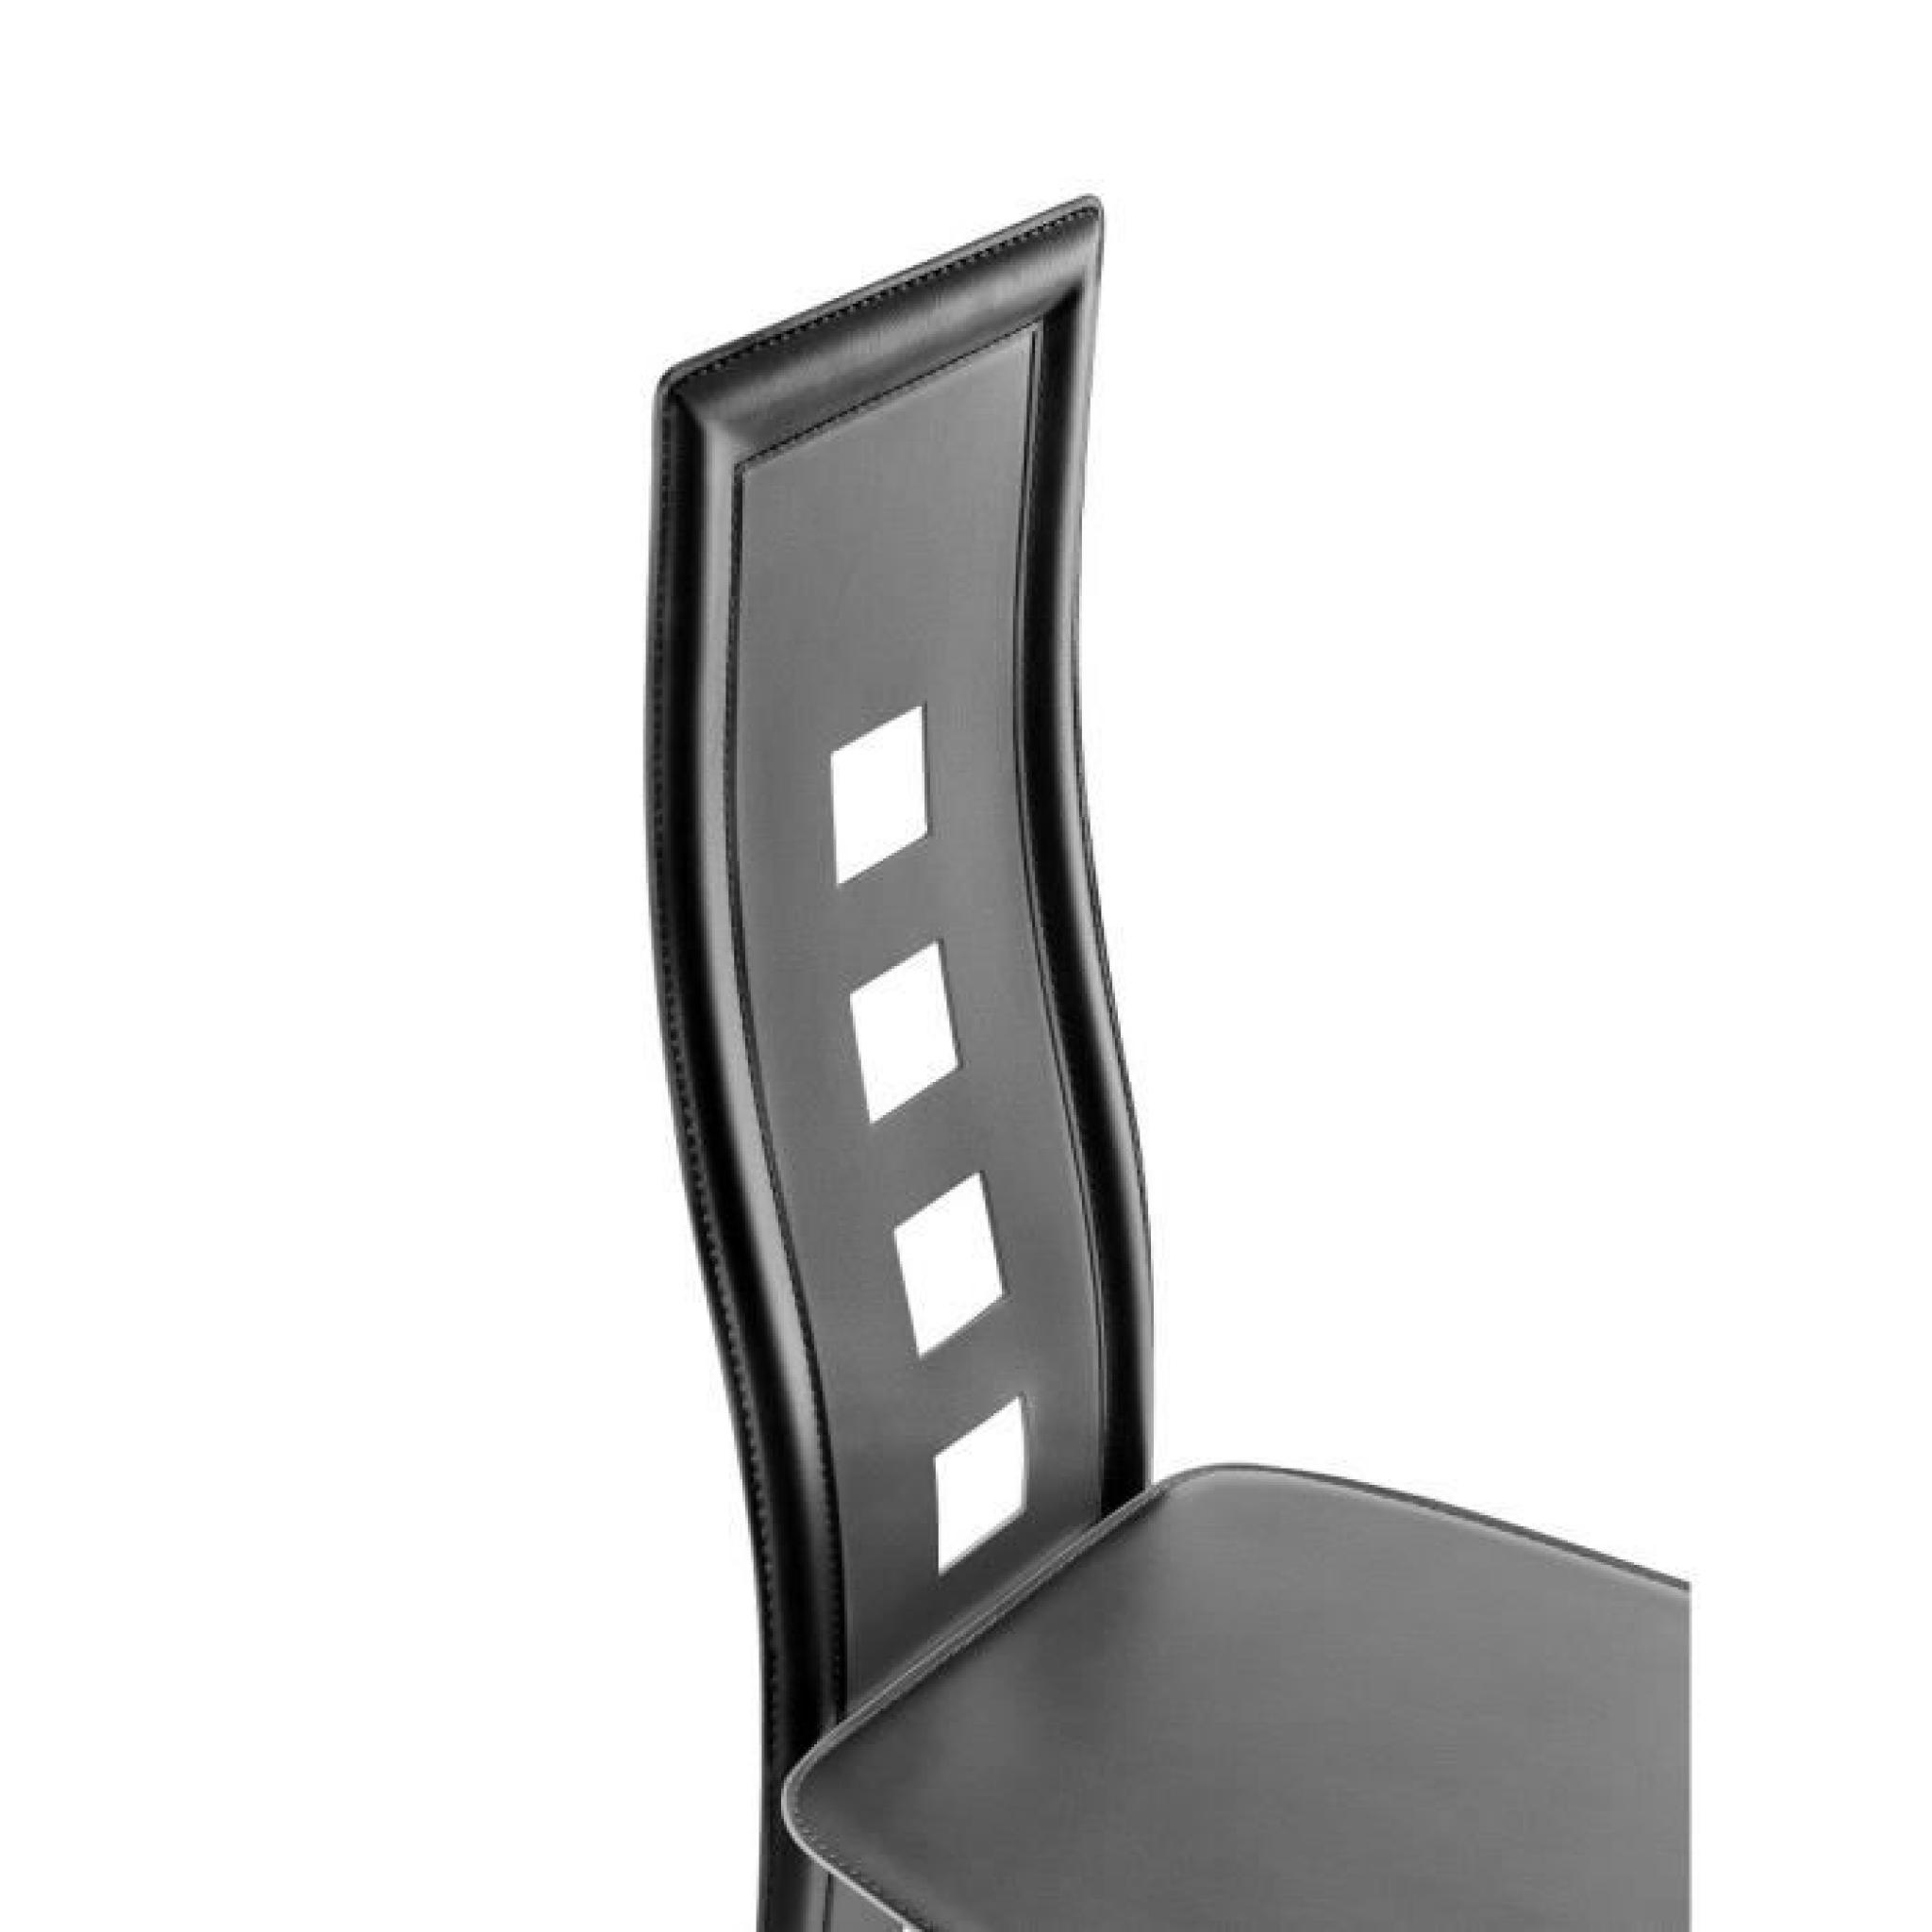 EIFFEL lot de 2 chaises de salle à manger noires et blanches simili et aluminium - Design pas cher